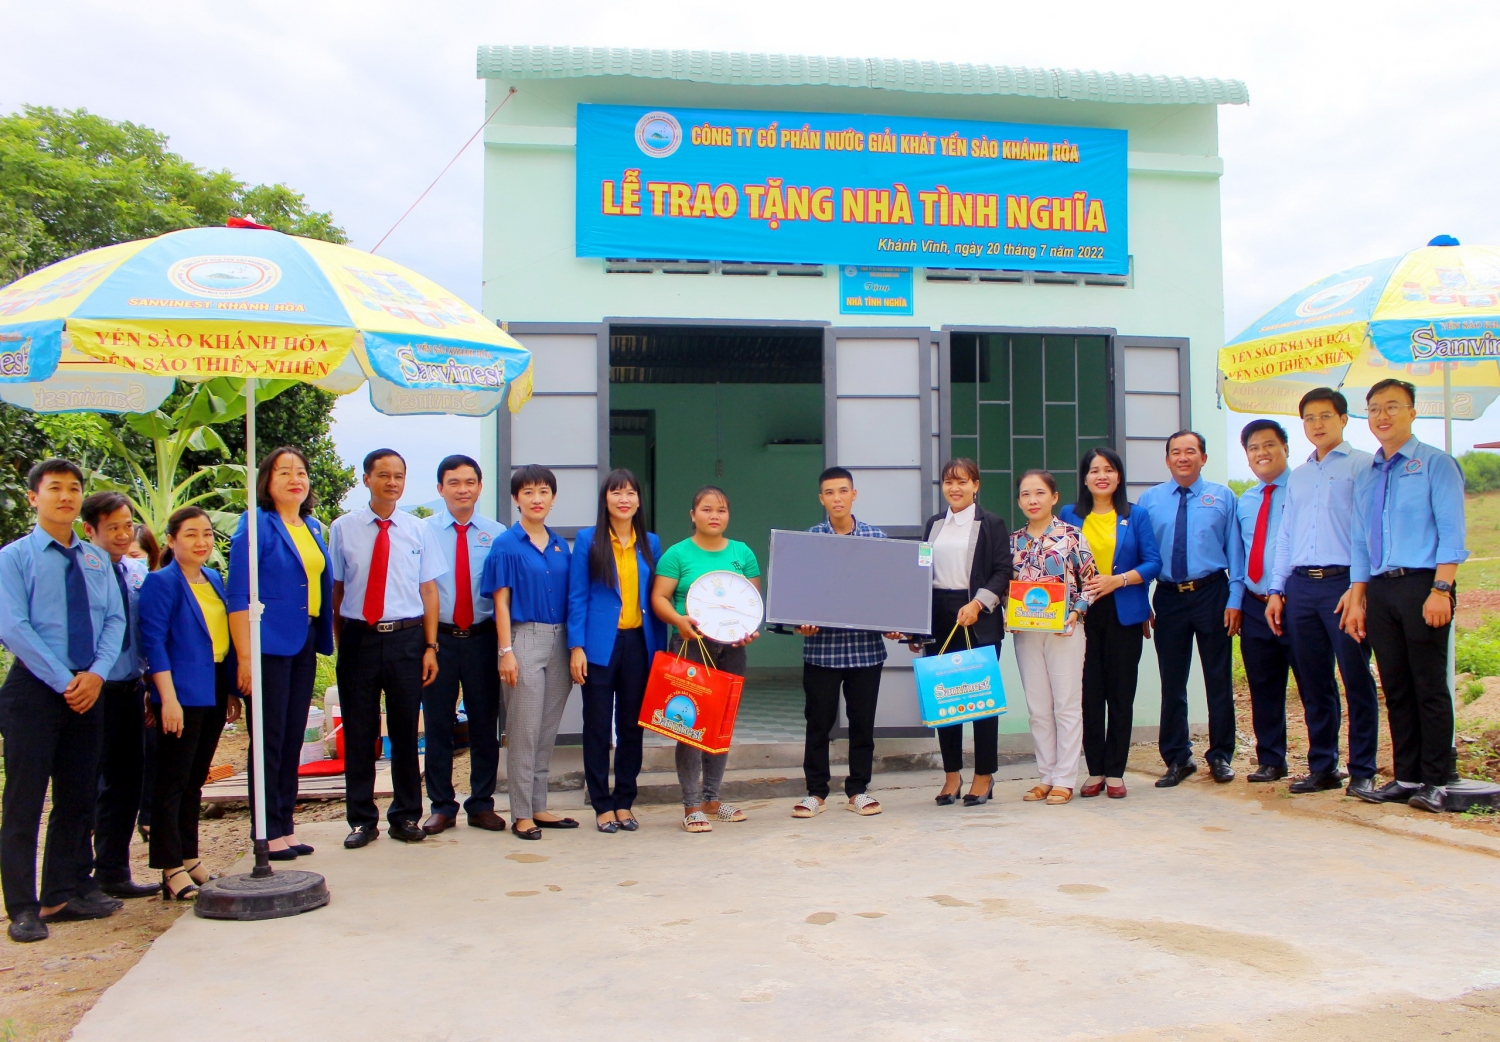 Công ty Cổ Phần Nước giải khát Yến sào Khánh Hòa trao tặng Nhà tình nghĩa tại huyện Khánh Vĩnh